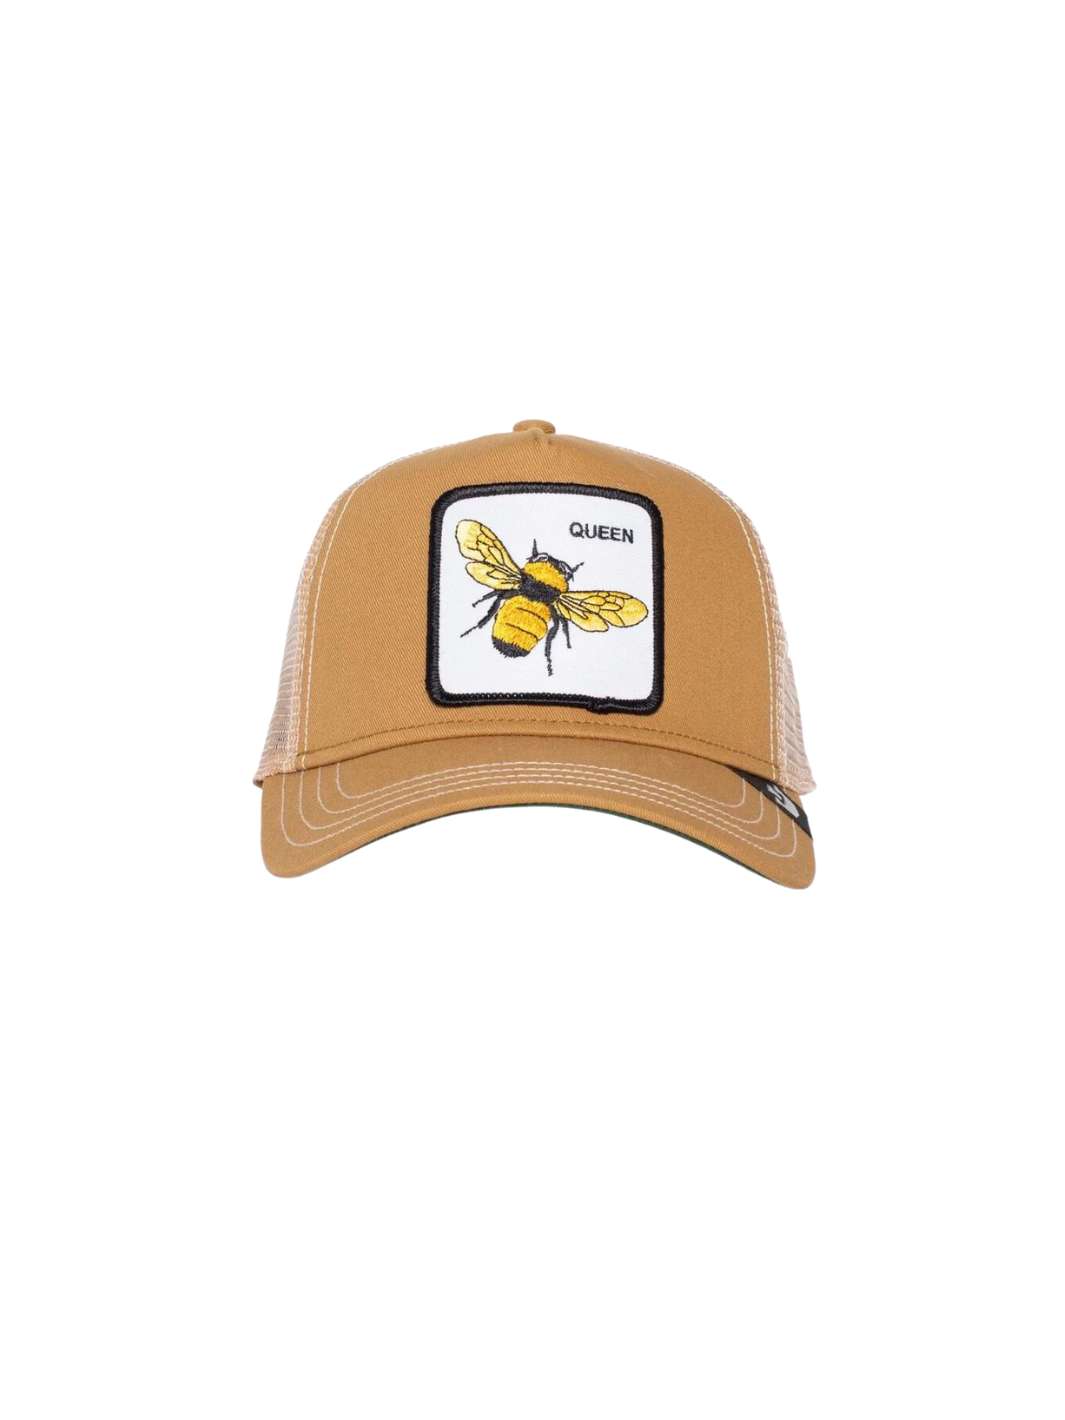 Goorin Bros. Accessories Cap | The Queen Bee